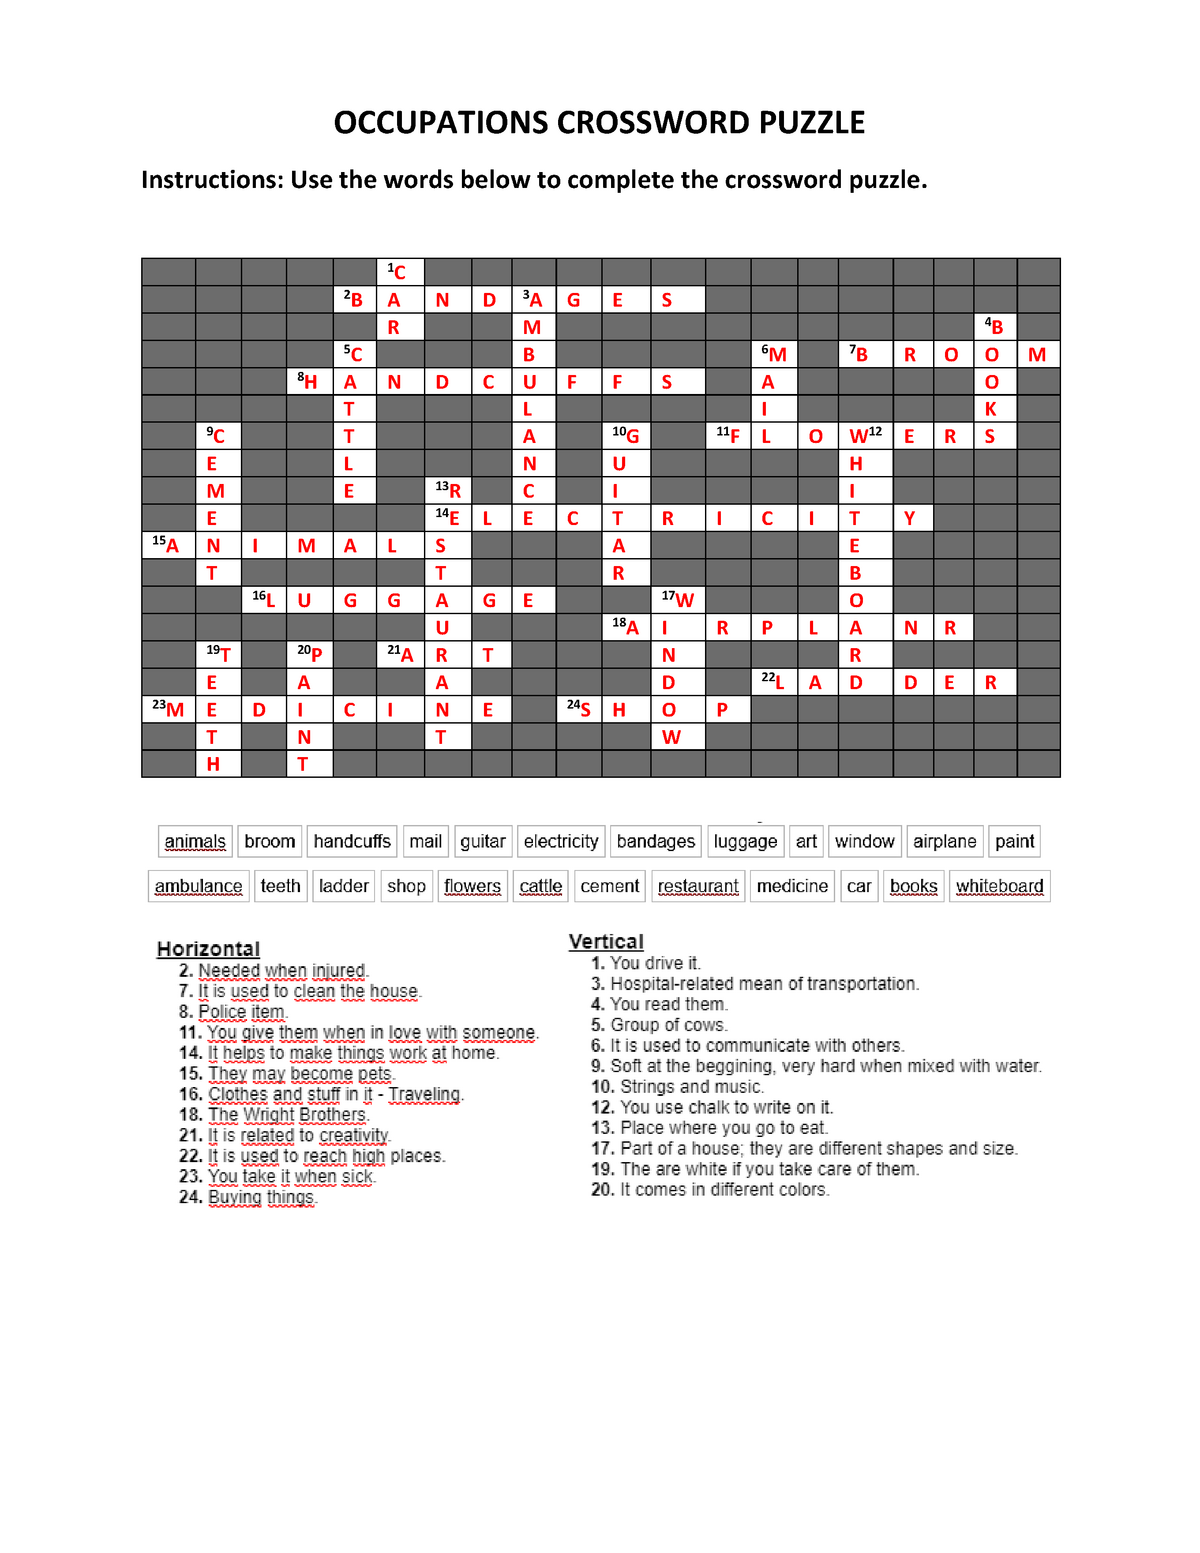 jobs qand occupations crossword puzzle convertido Inglés II UNAH